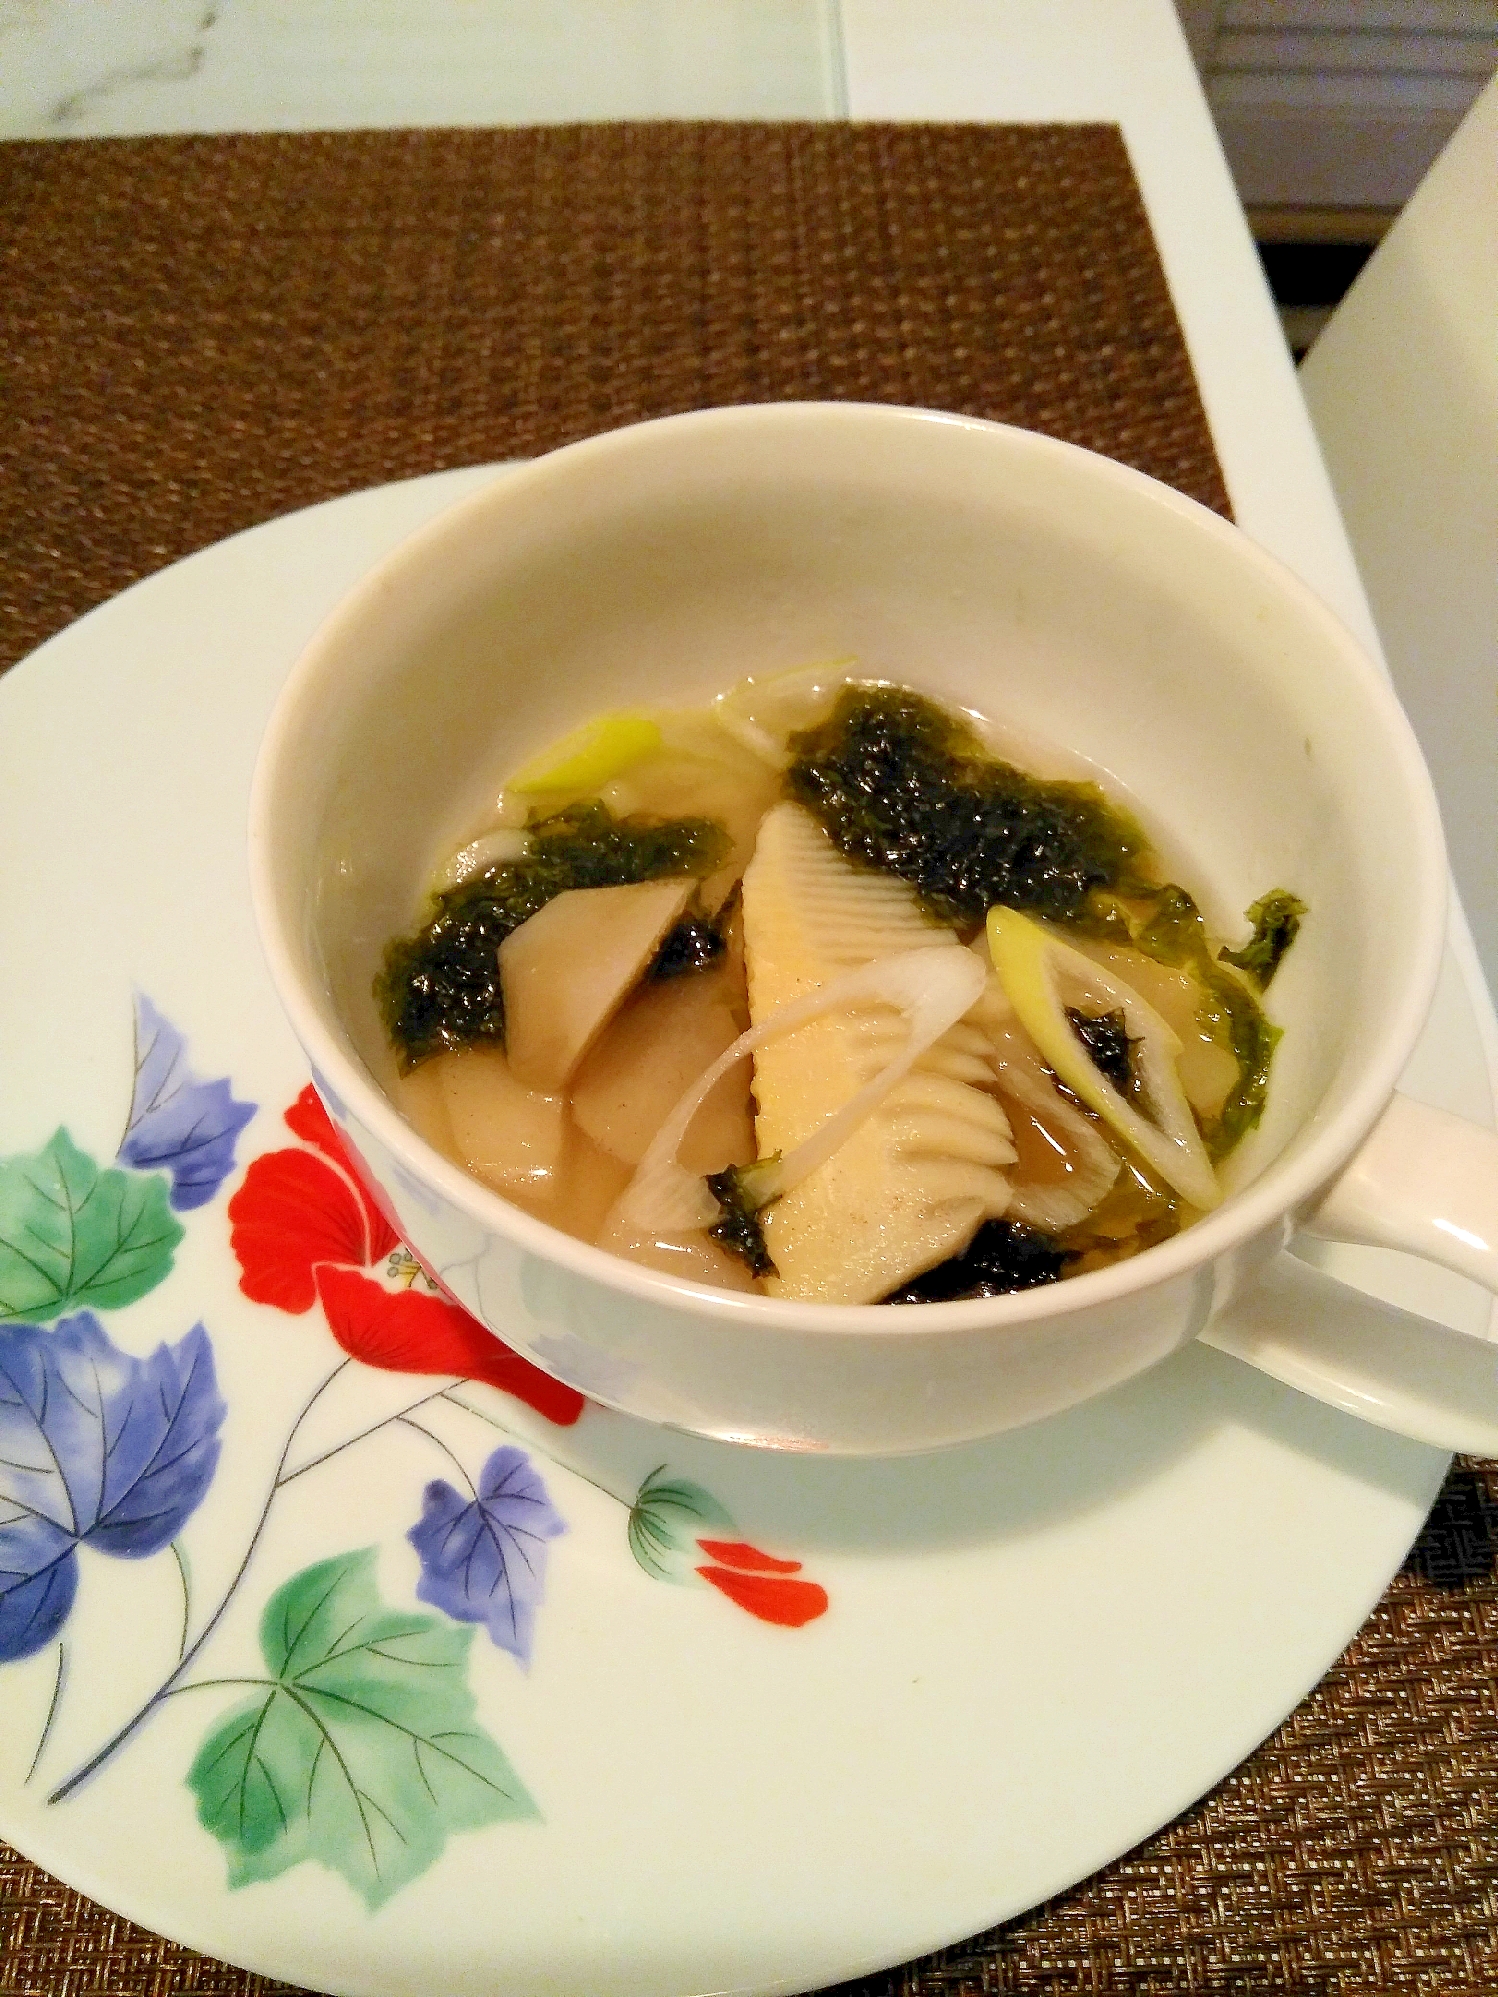 菊芋と筍の中華風のりスープ